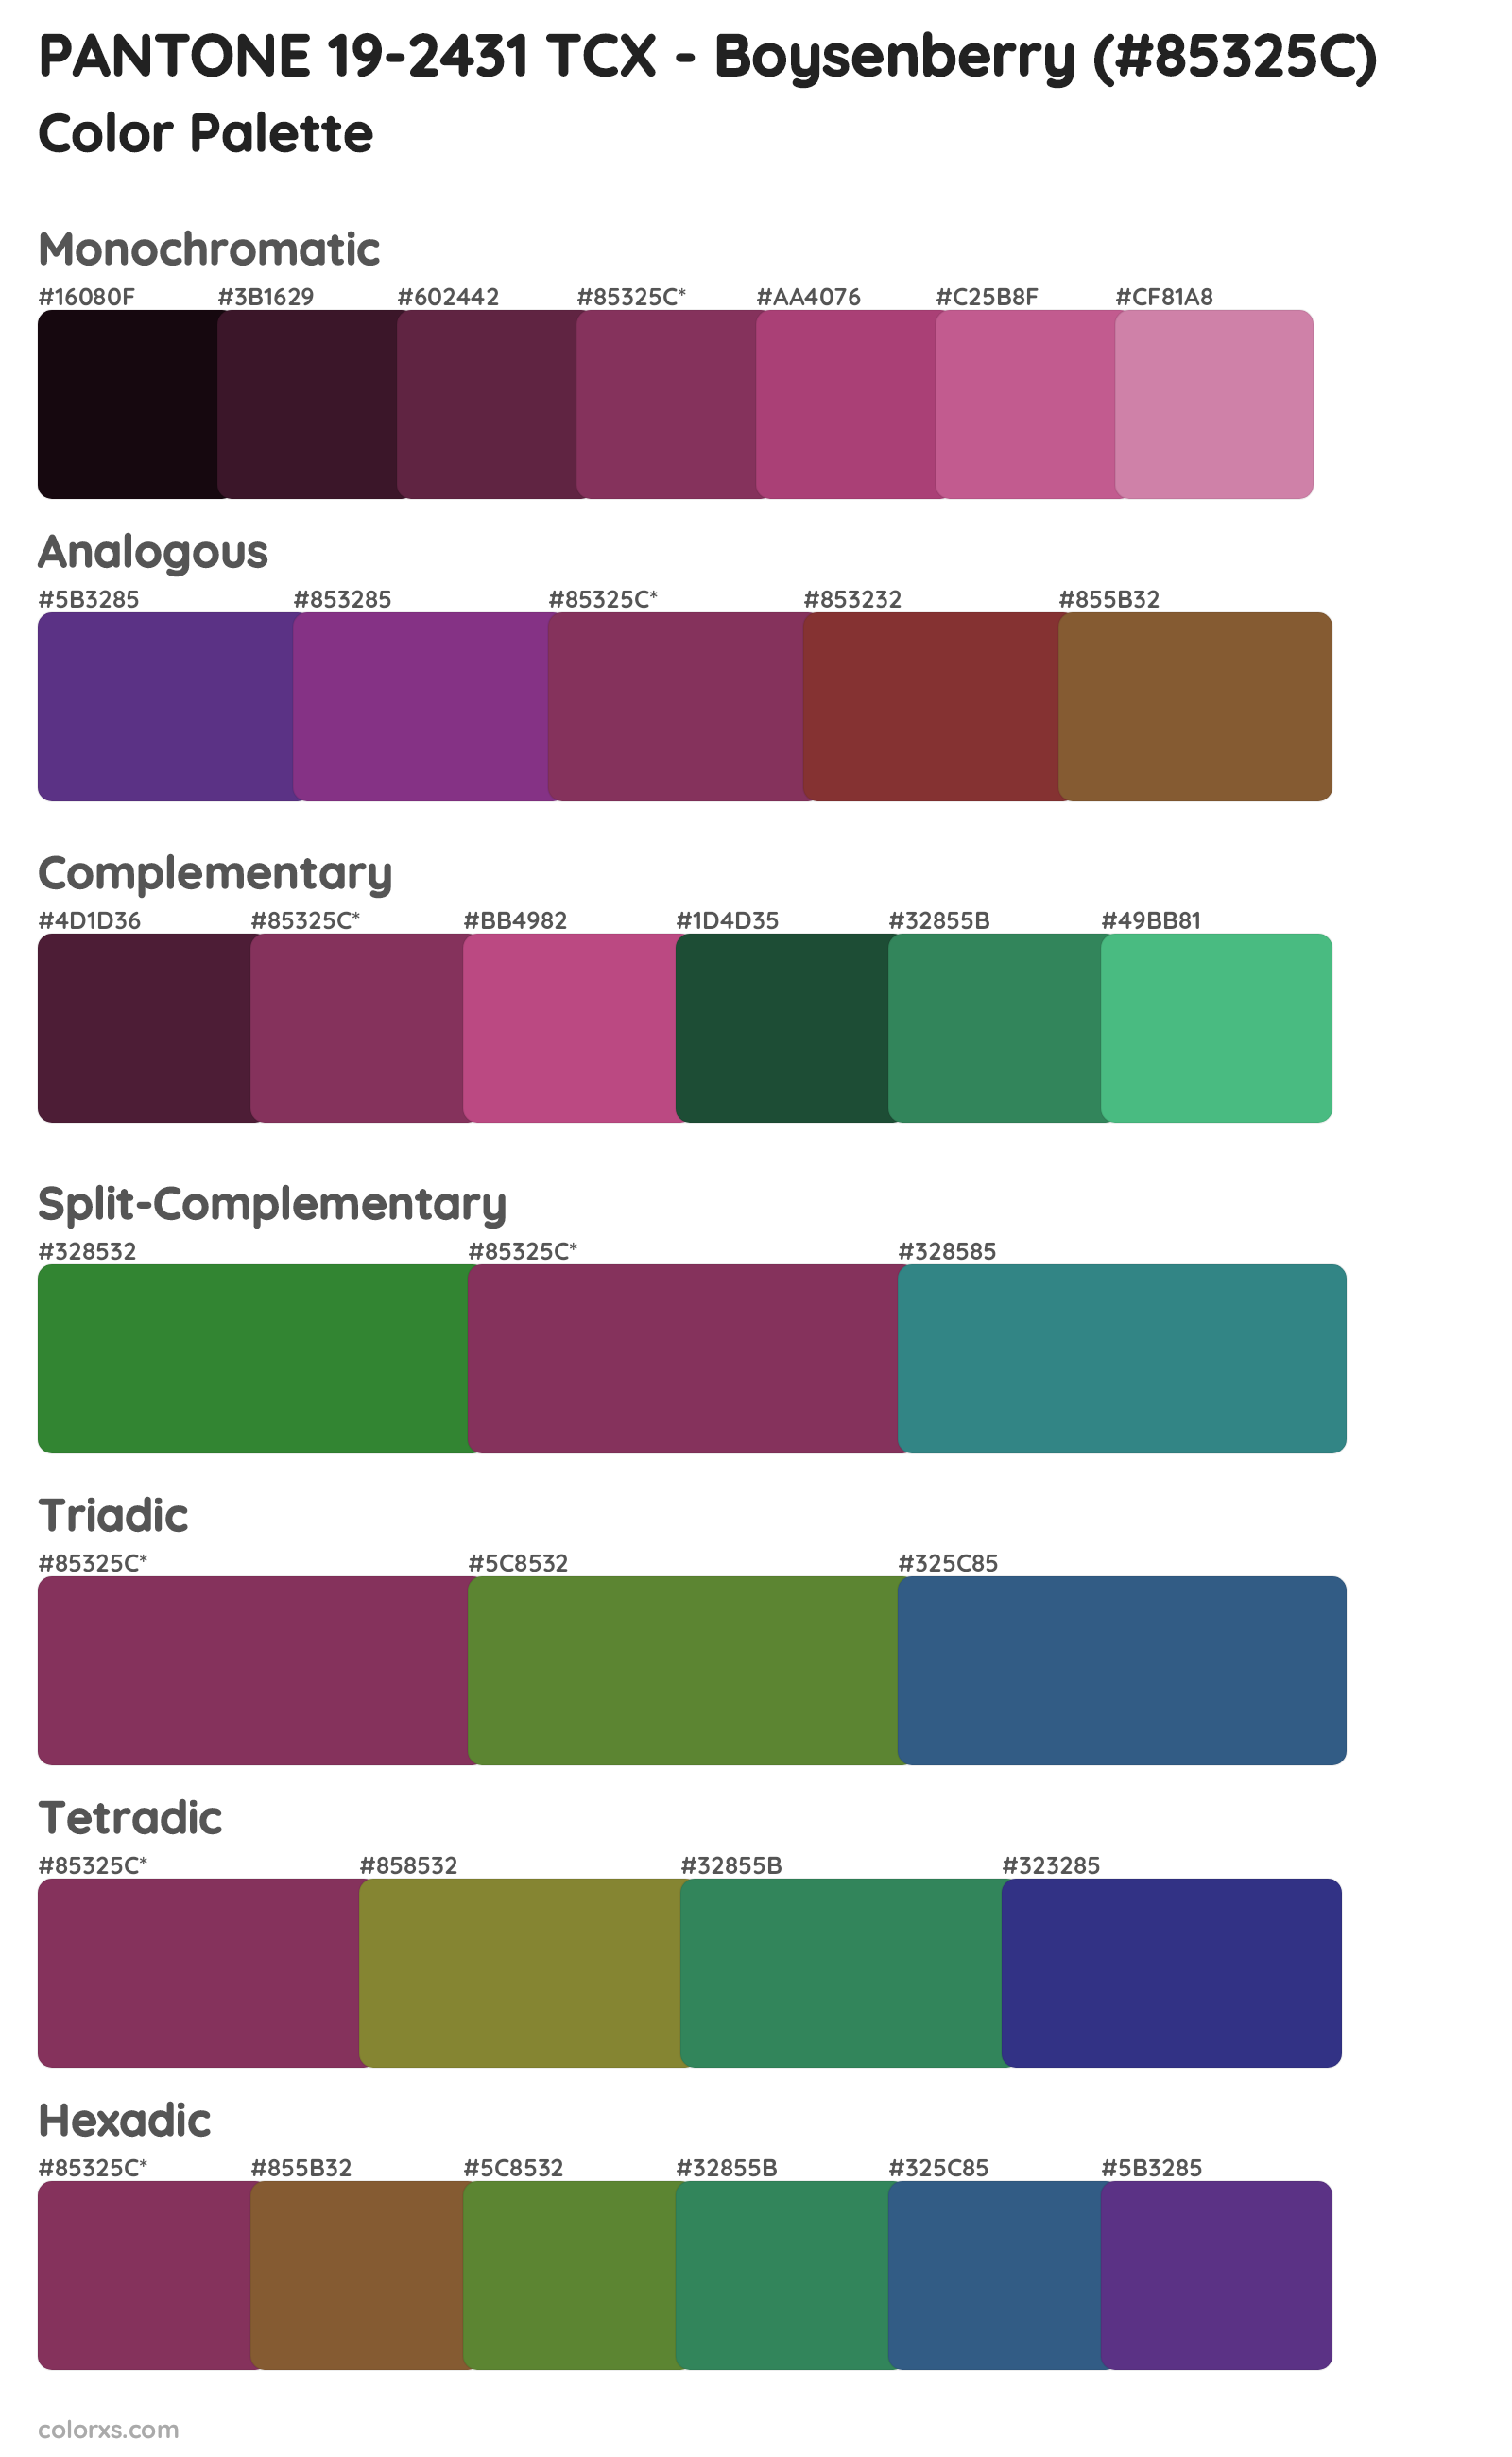 PANTONE 19-2431 TCX - Boysenberry Color Scheme Palettes